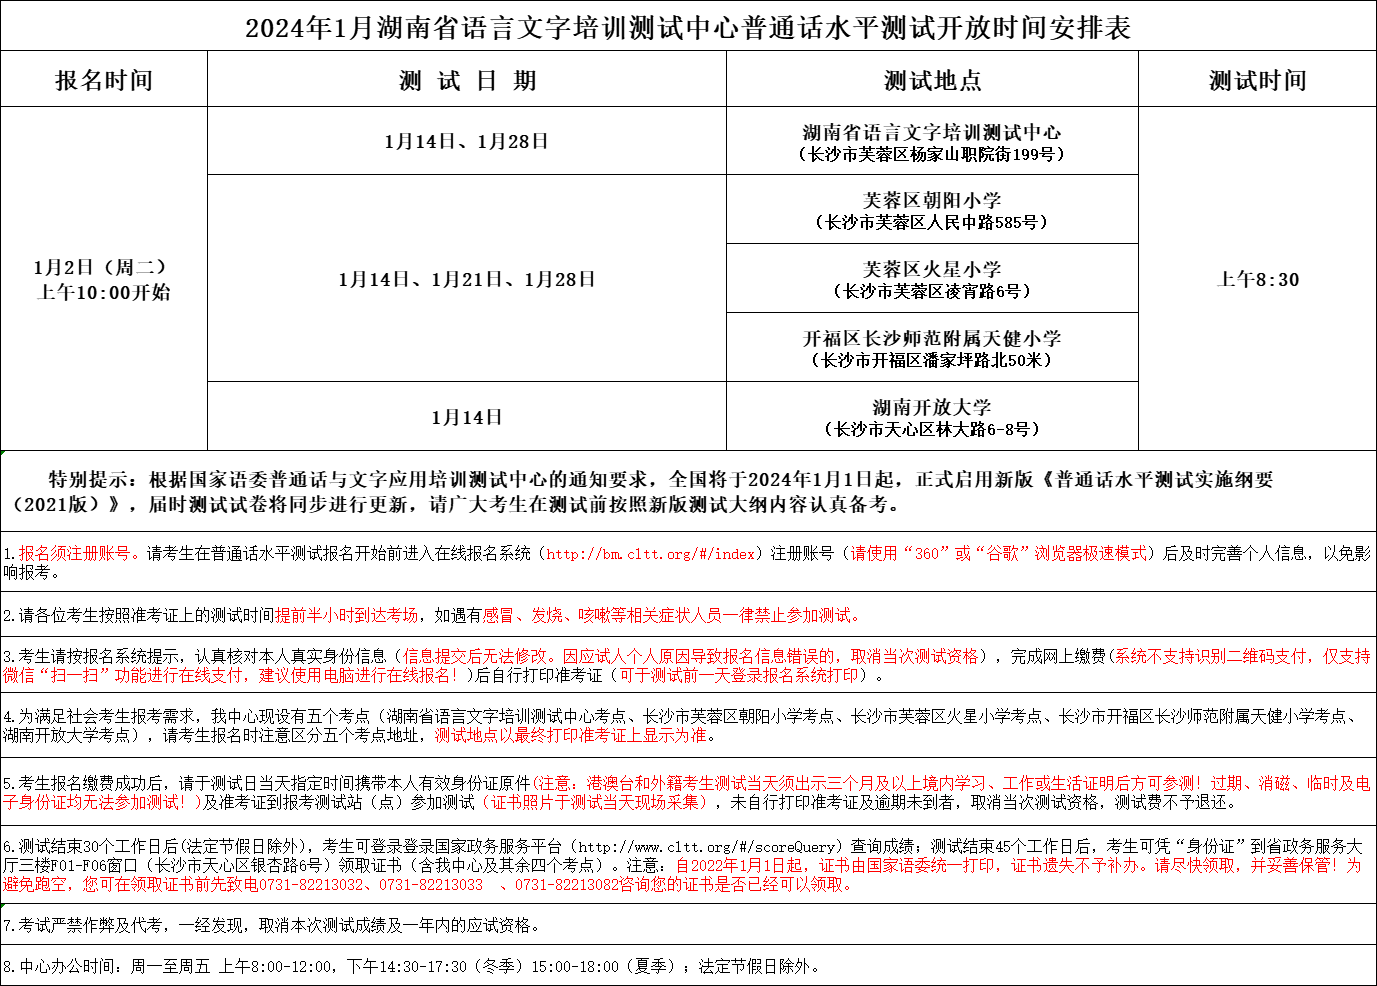 2024年1月湖南省语言文字培训测试中心普通话水平测试开放时间安排表